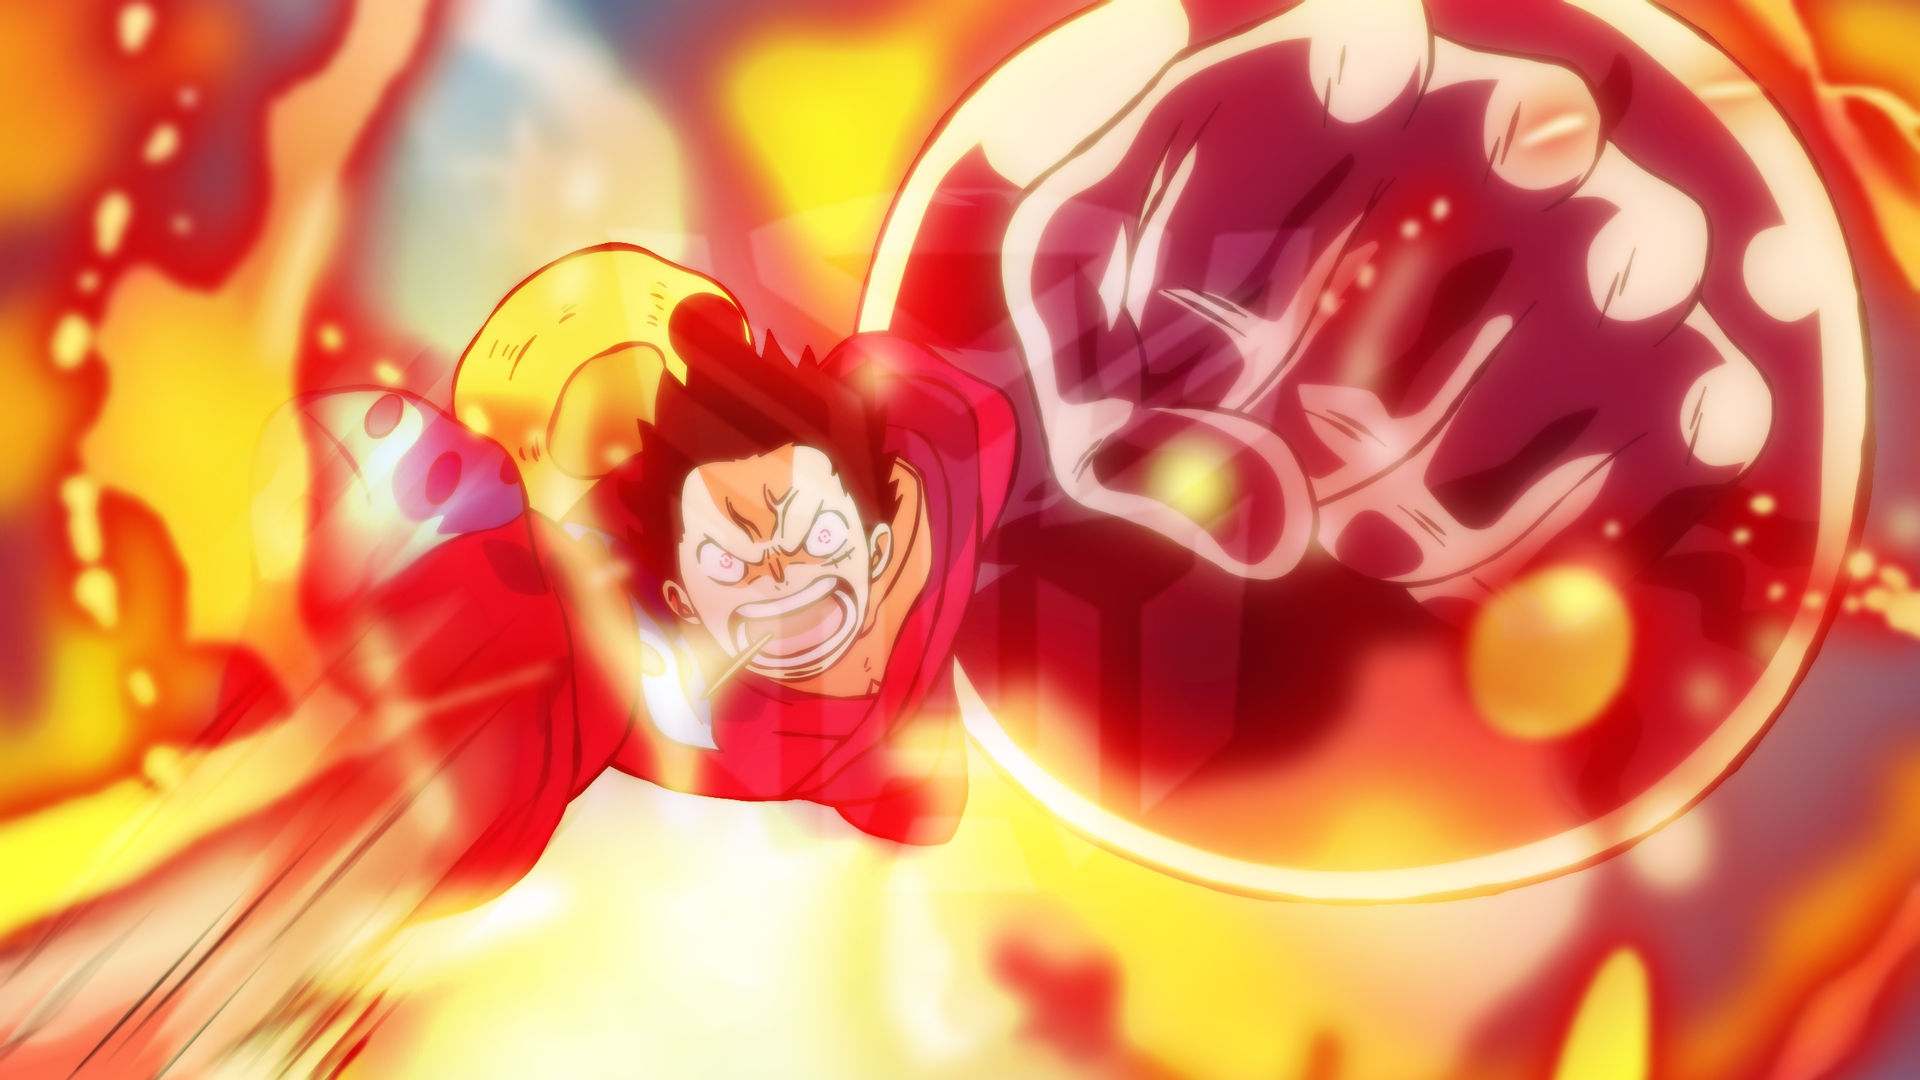 Chế độ Gear 3 của Luffy khiến anh ta trở nên mạnh mẽ vượt xa tưởng tượng! Hãy xem hình ảnh đầy sức mạnh của Luffy khi kích hoạt Gear 3 trên trang web của chúng tôi ngay bây giờ!